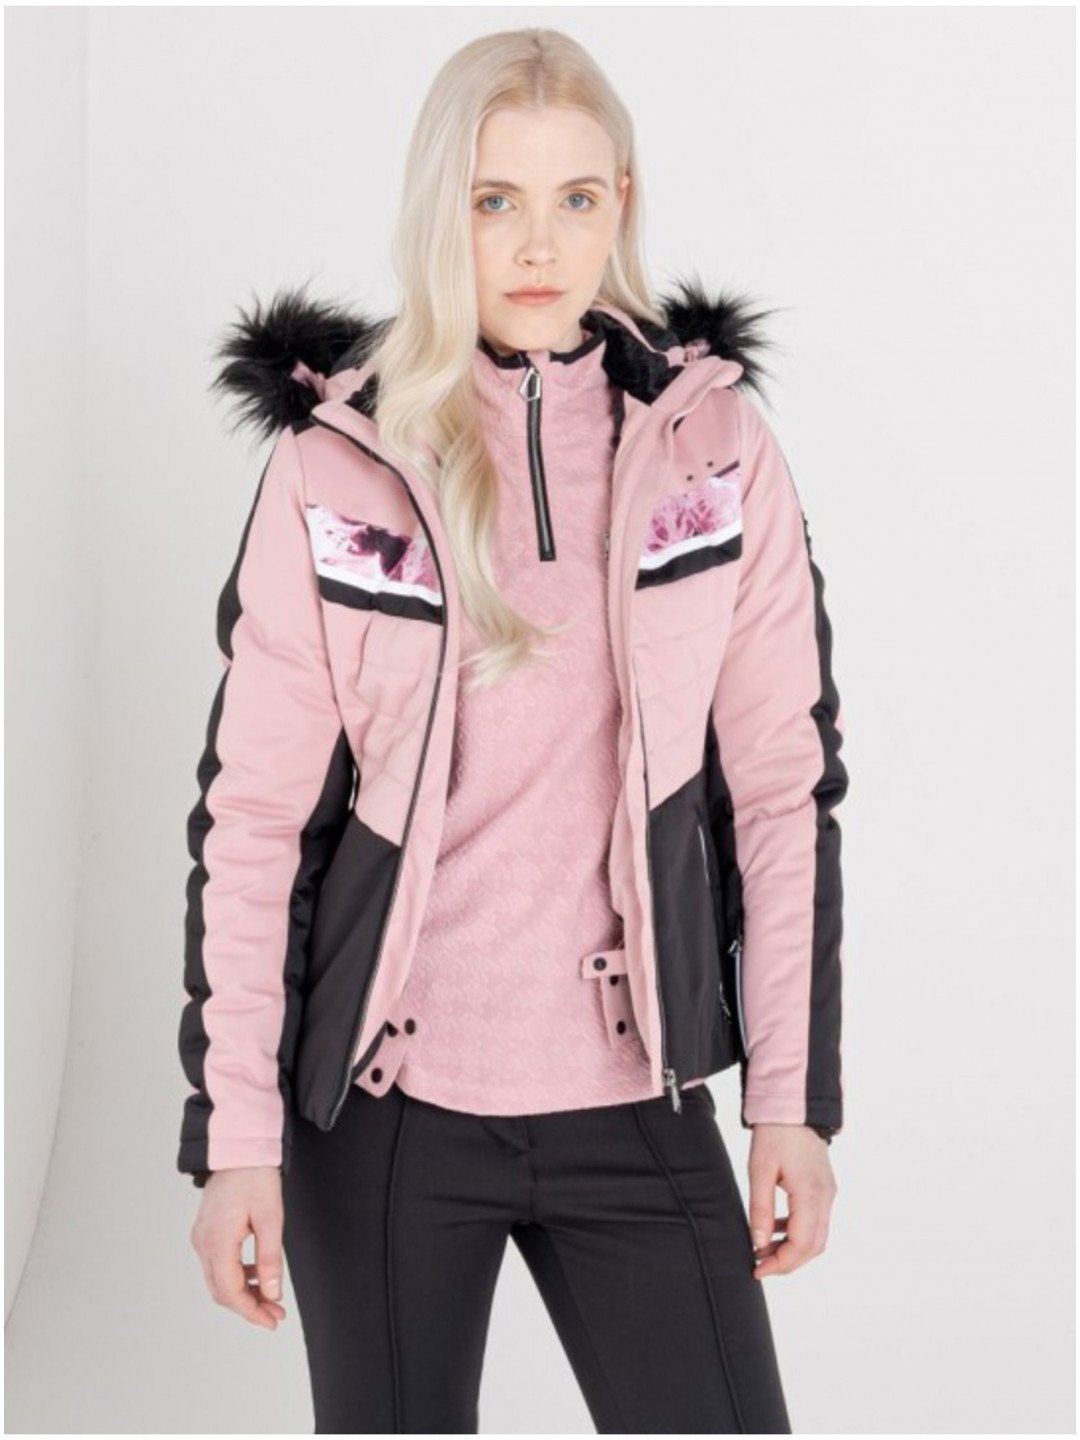 Černo-růžová dámská lyžařská bunda s kapucí a umělým kožíškem Dare 2B Dynamite